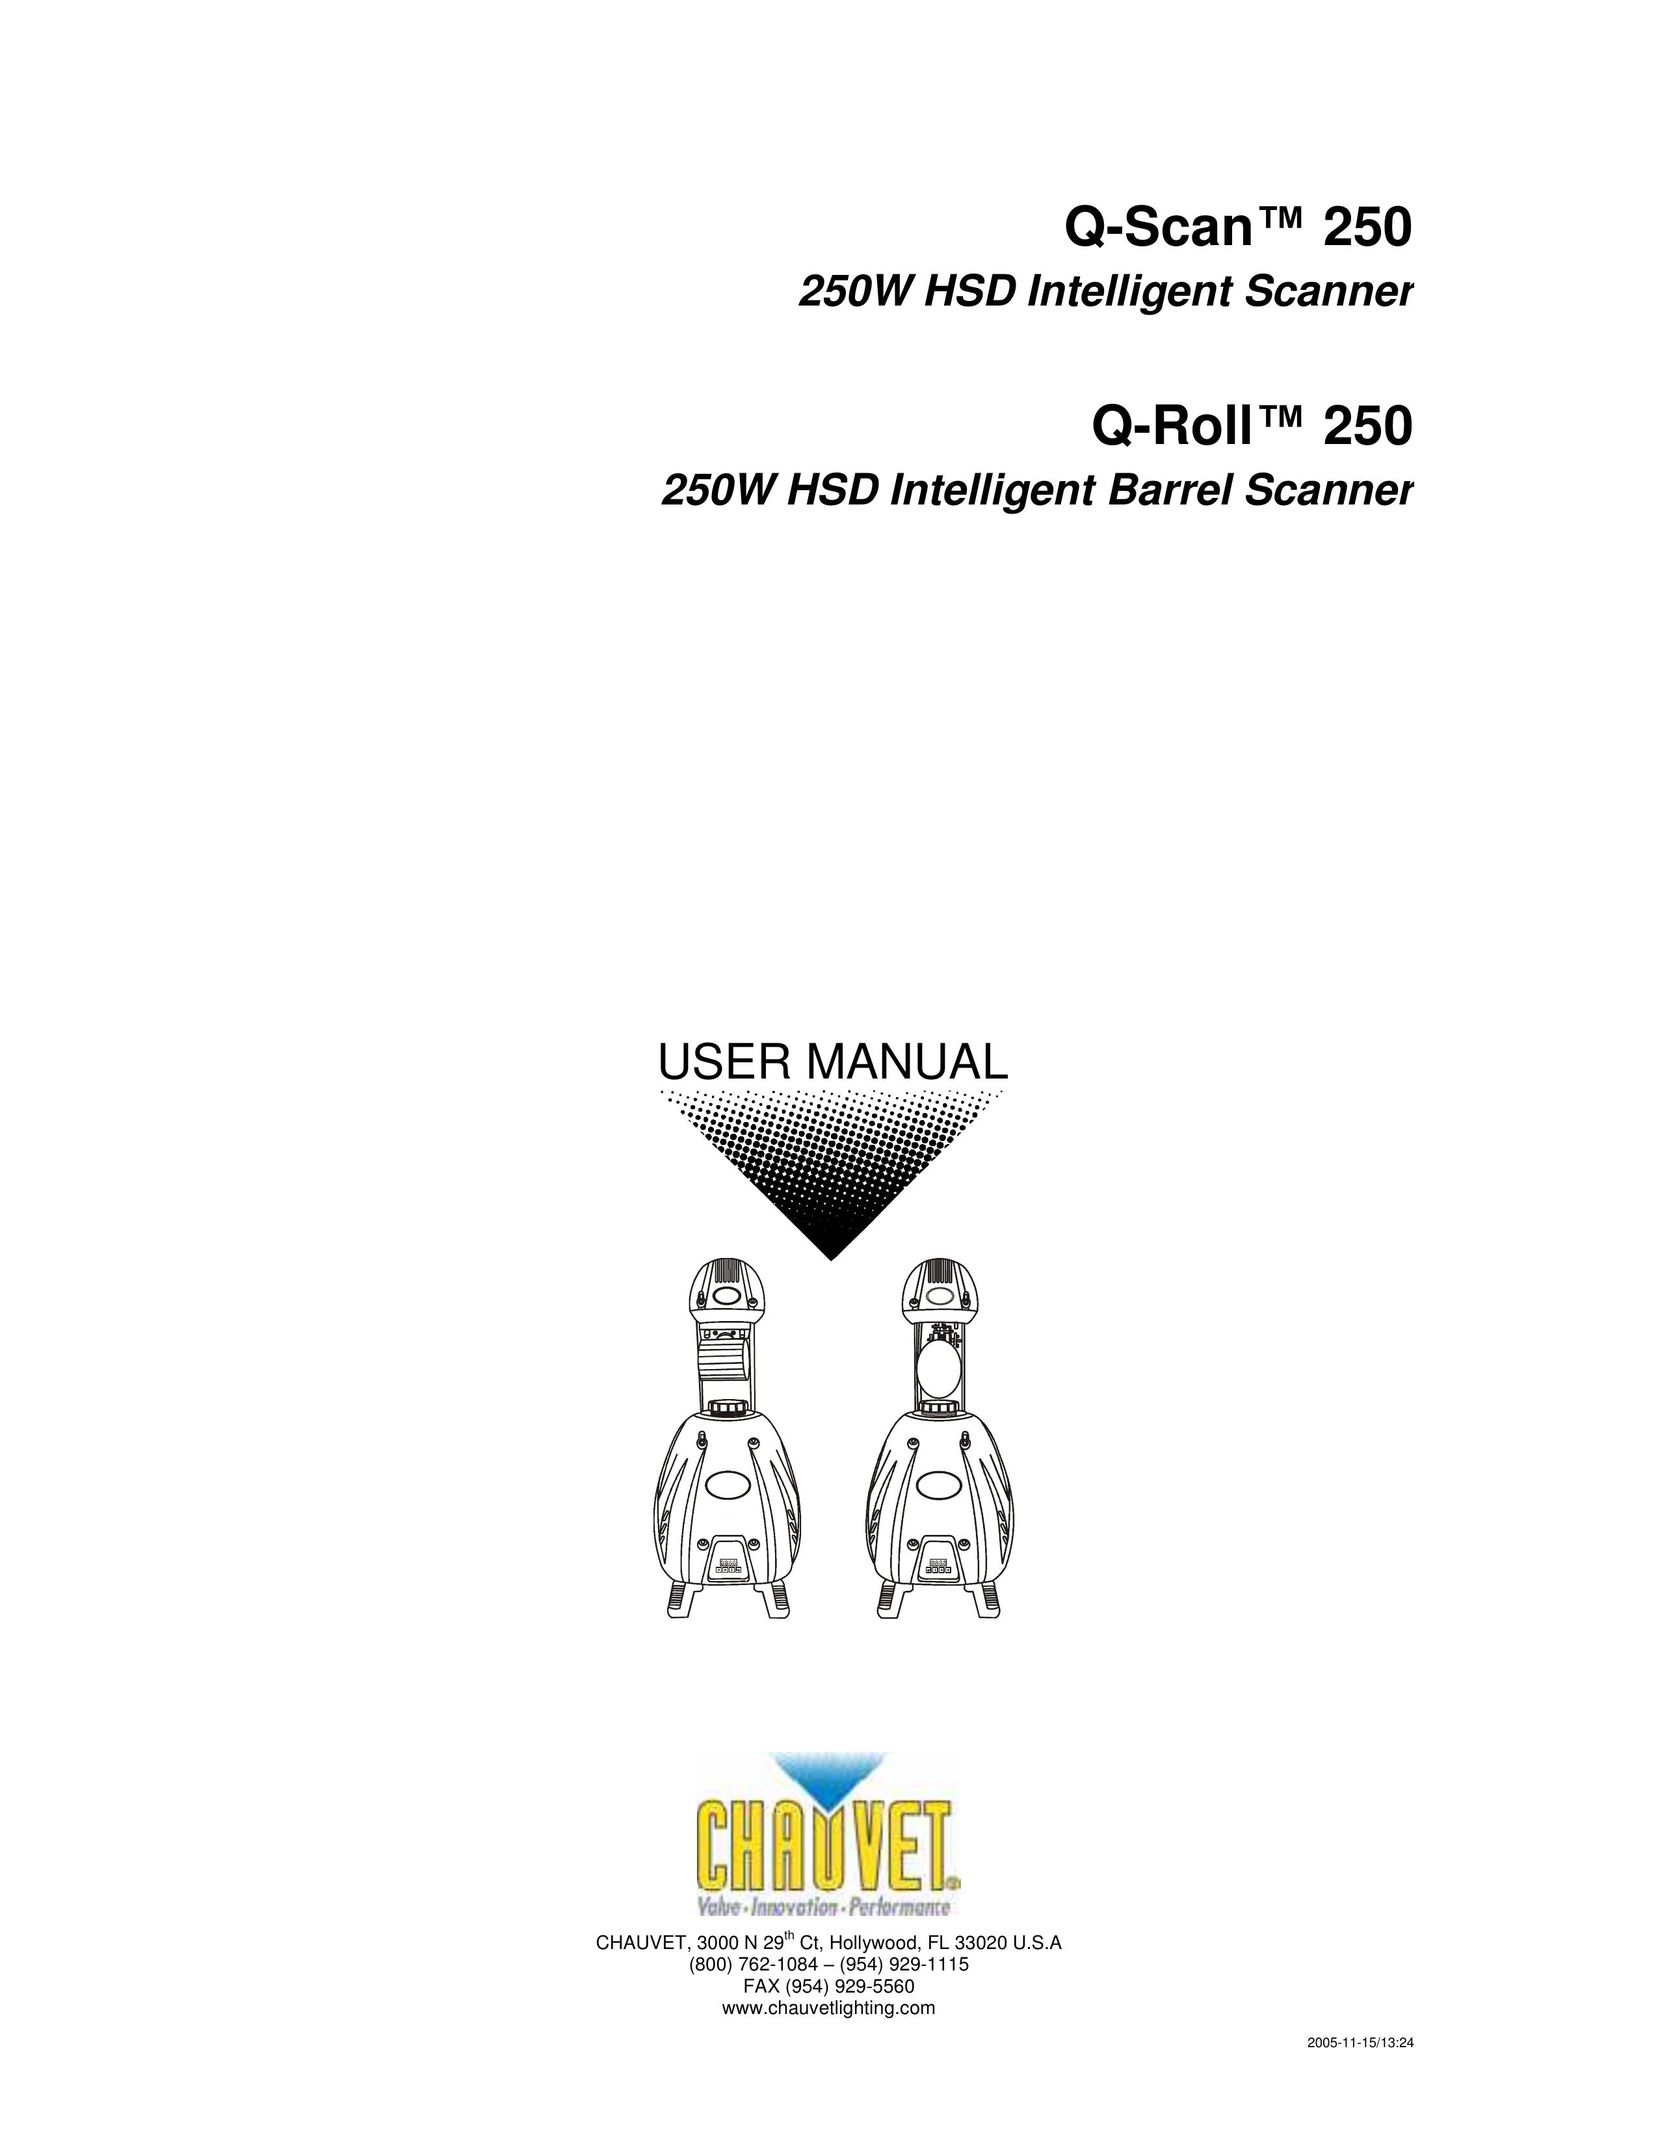 Chauvet Q-RollTM 250 Scanner User Manual